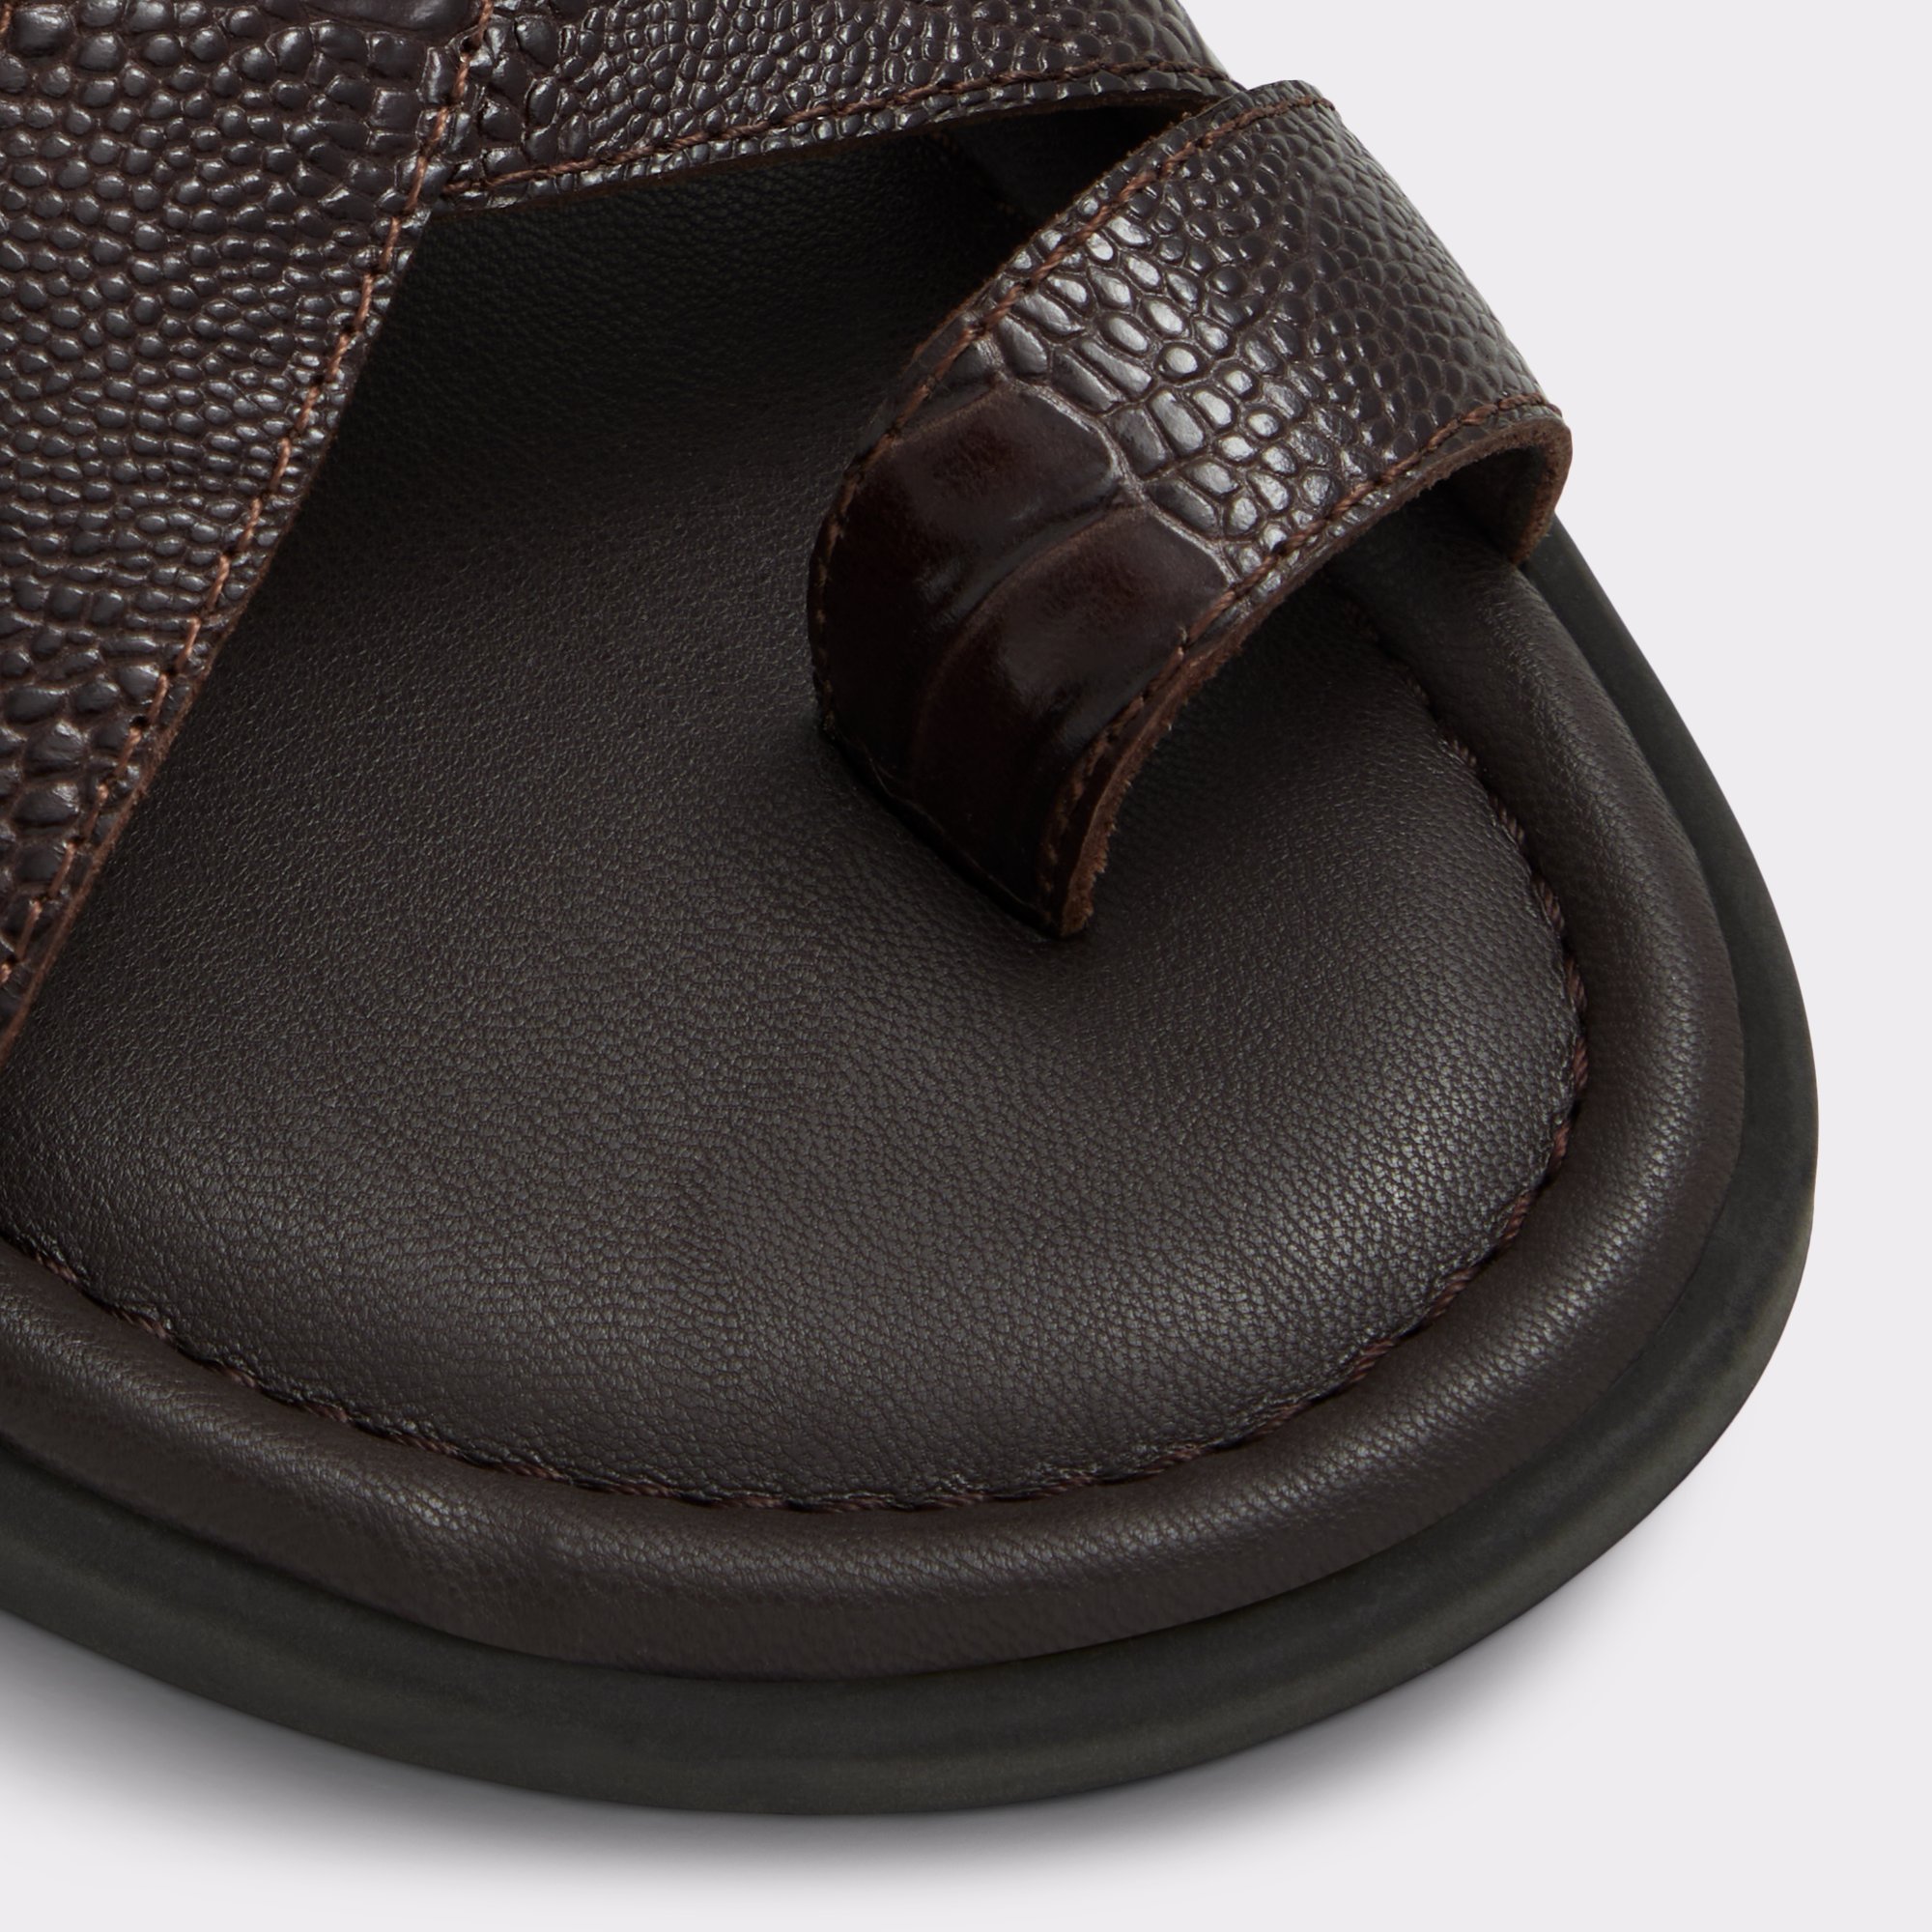 Zaino Dark Brown Men's Sandals & Slides | ALDO US